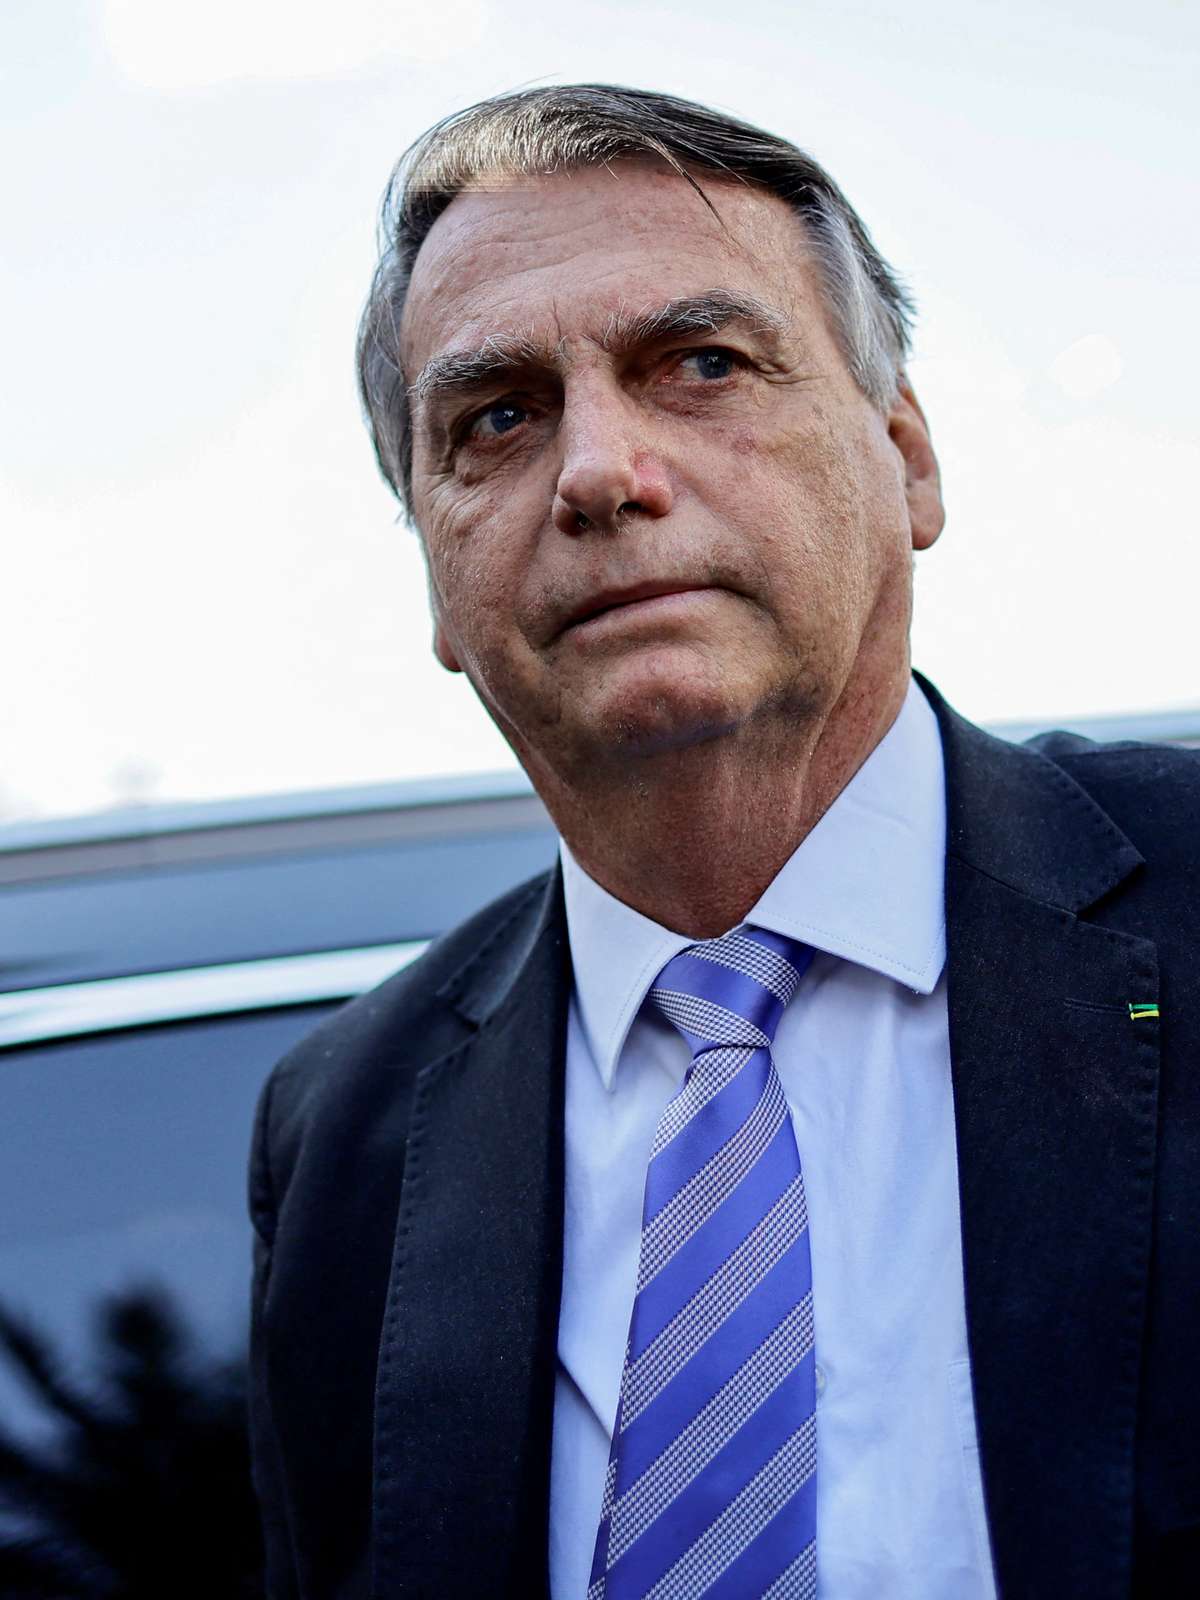 Eduardo Bolsonaro compartilha notícia antiga sobre coronavírus e é